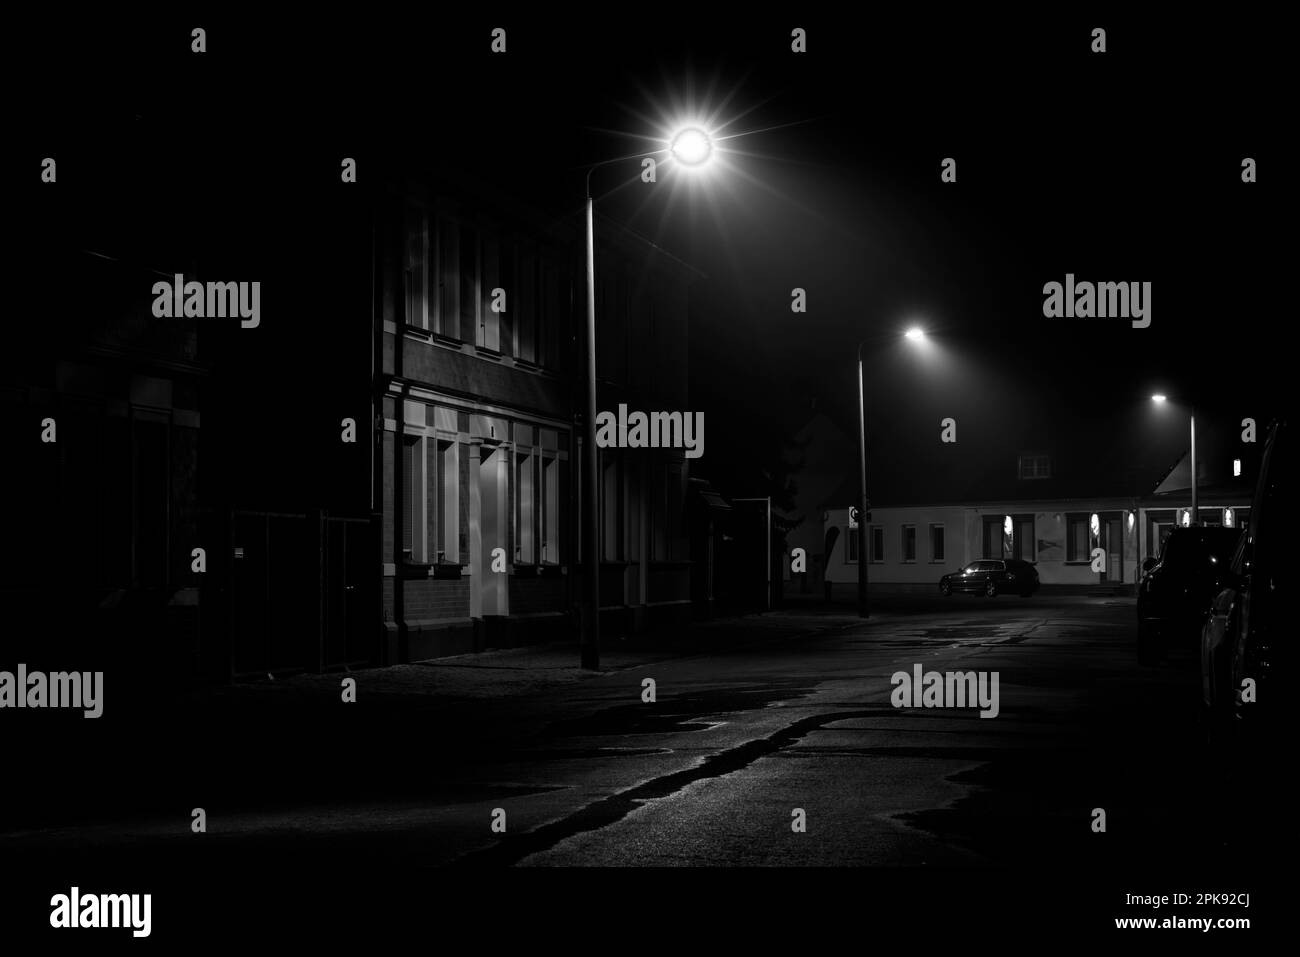 La nuit dans la rue, peu de brouillard dans la lanterne, les voitures se garent sur le bord de la route, photographie en noir et blanc Banque D'Images